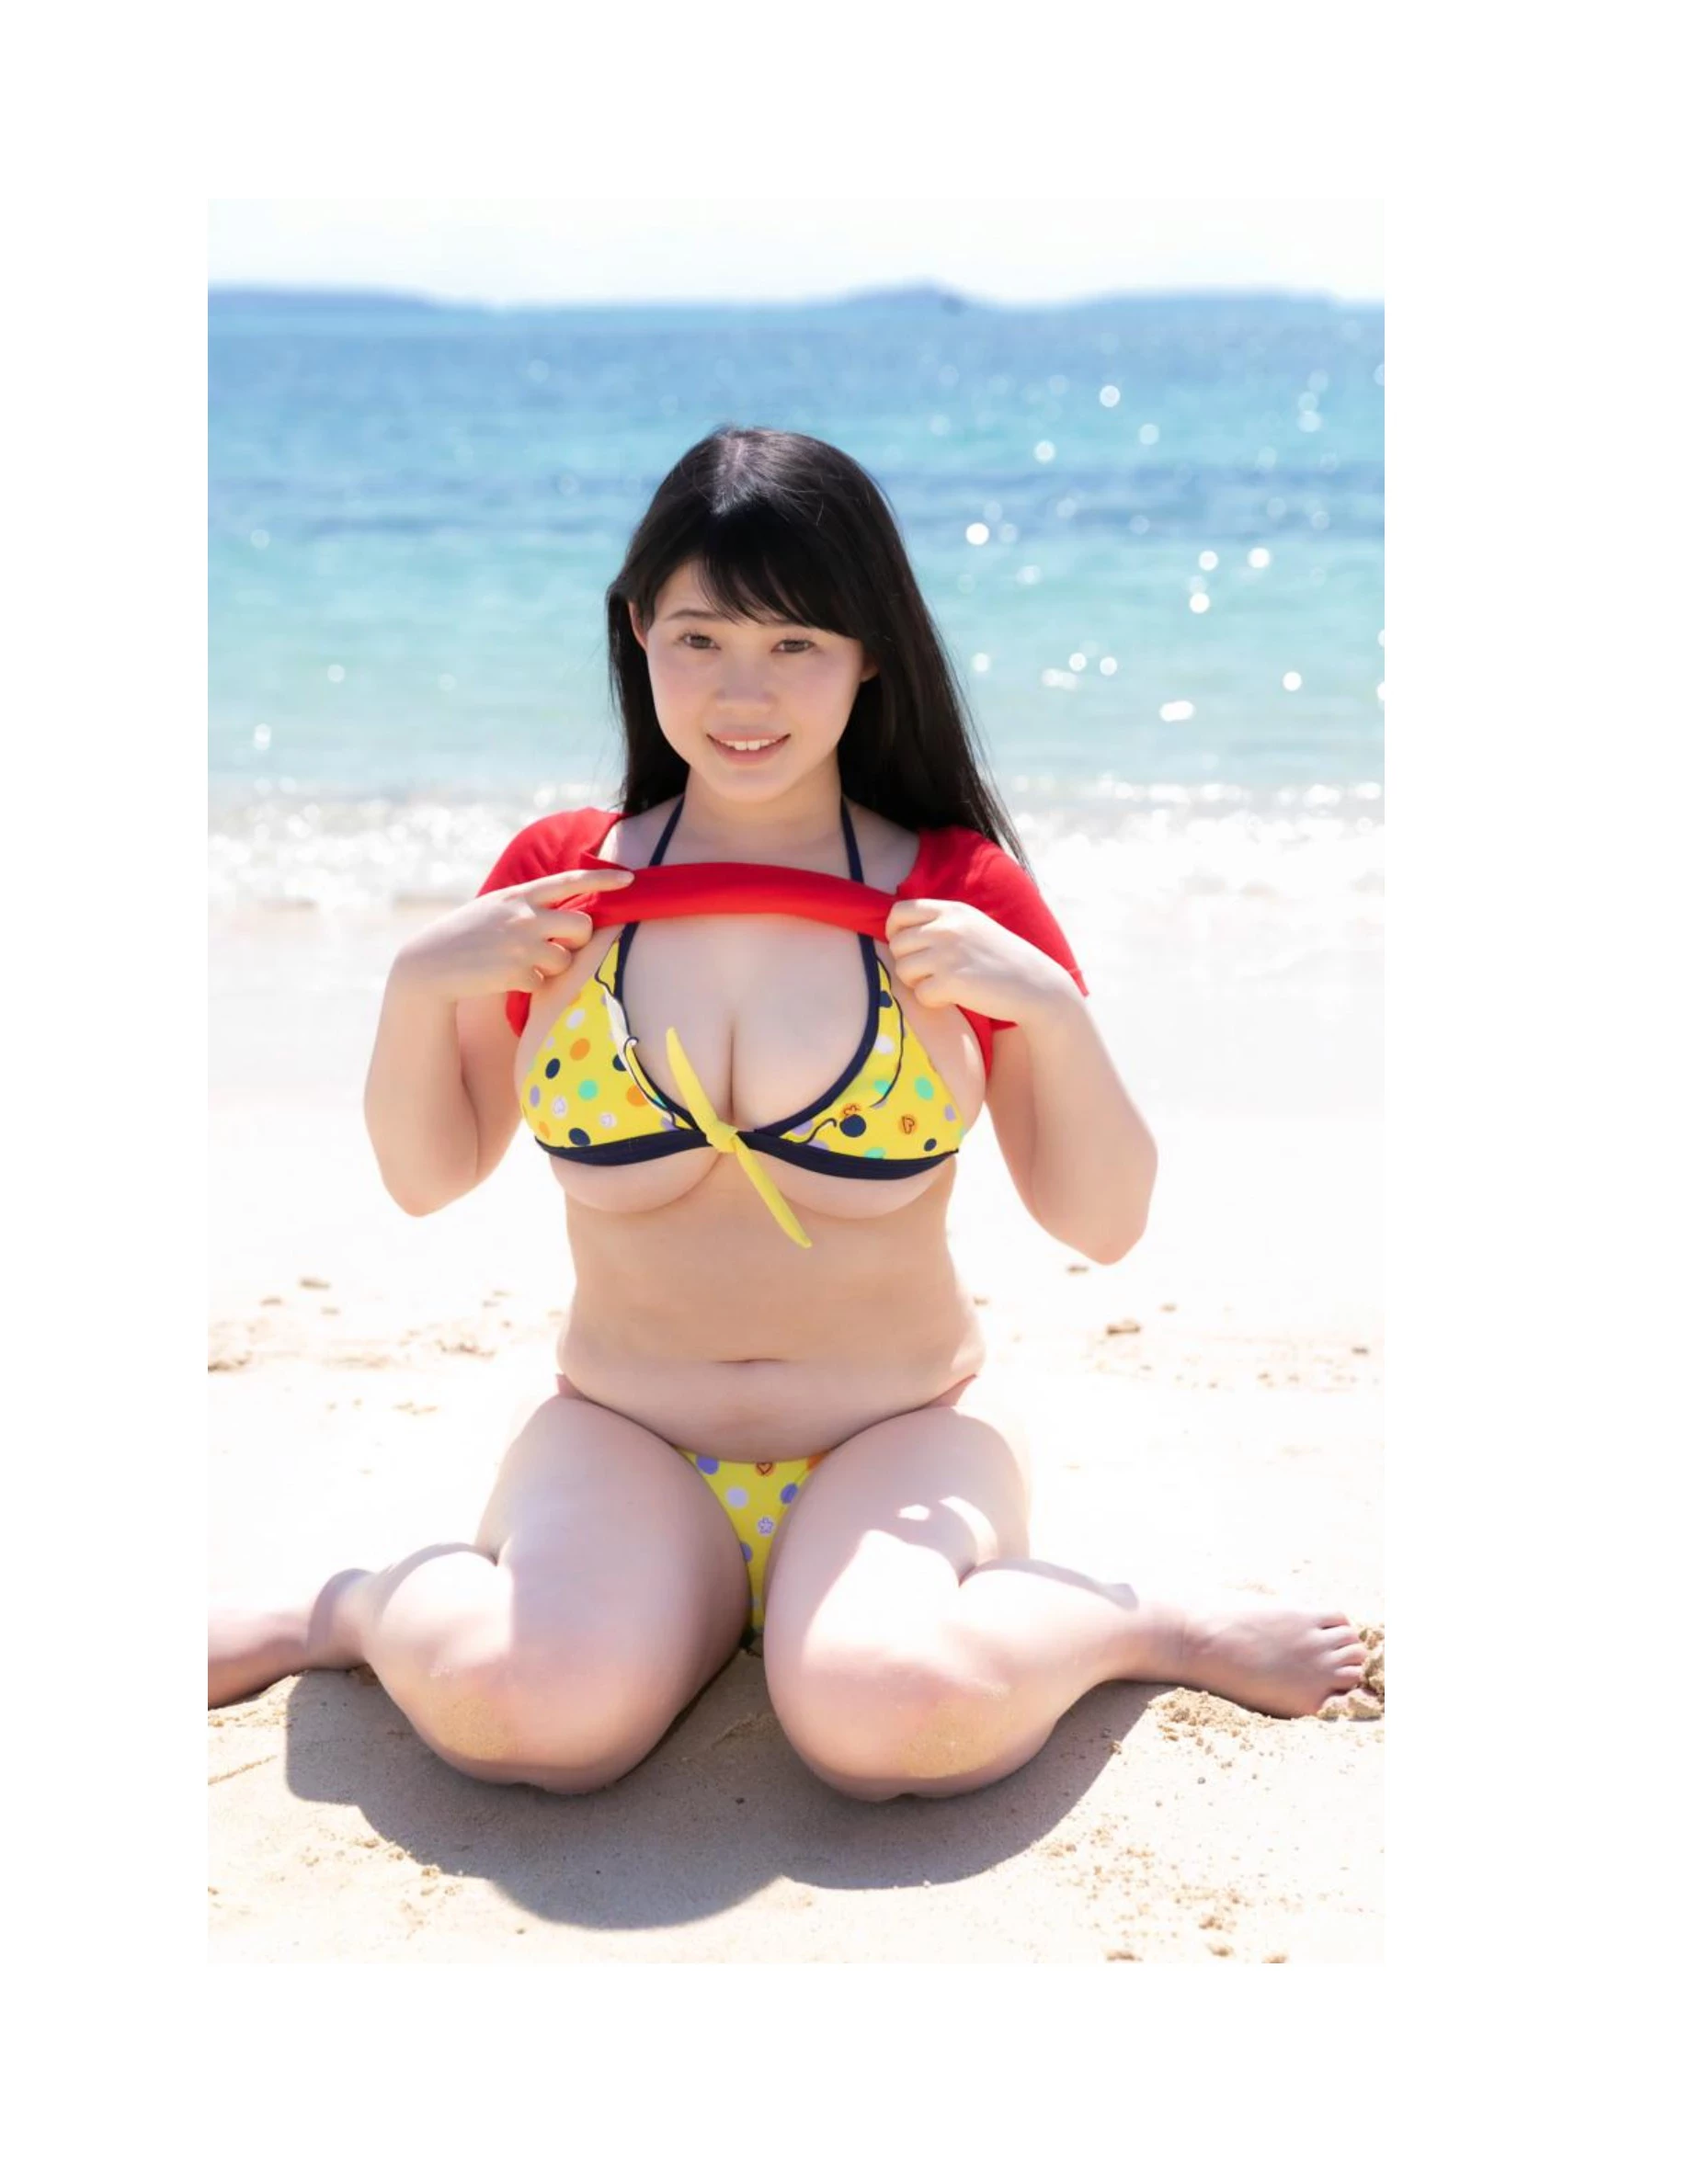 伊川愛梨 卒業旅行 夏 寫真集 J罩杯偶像美少女傳説-333